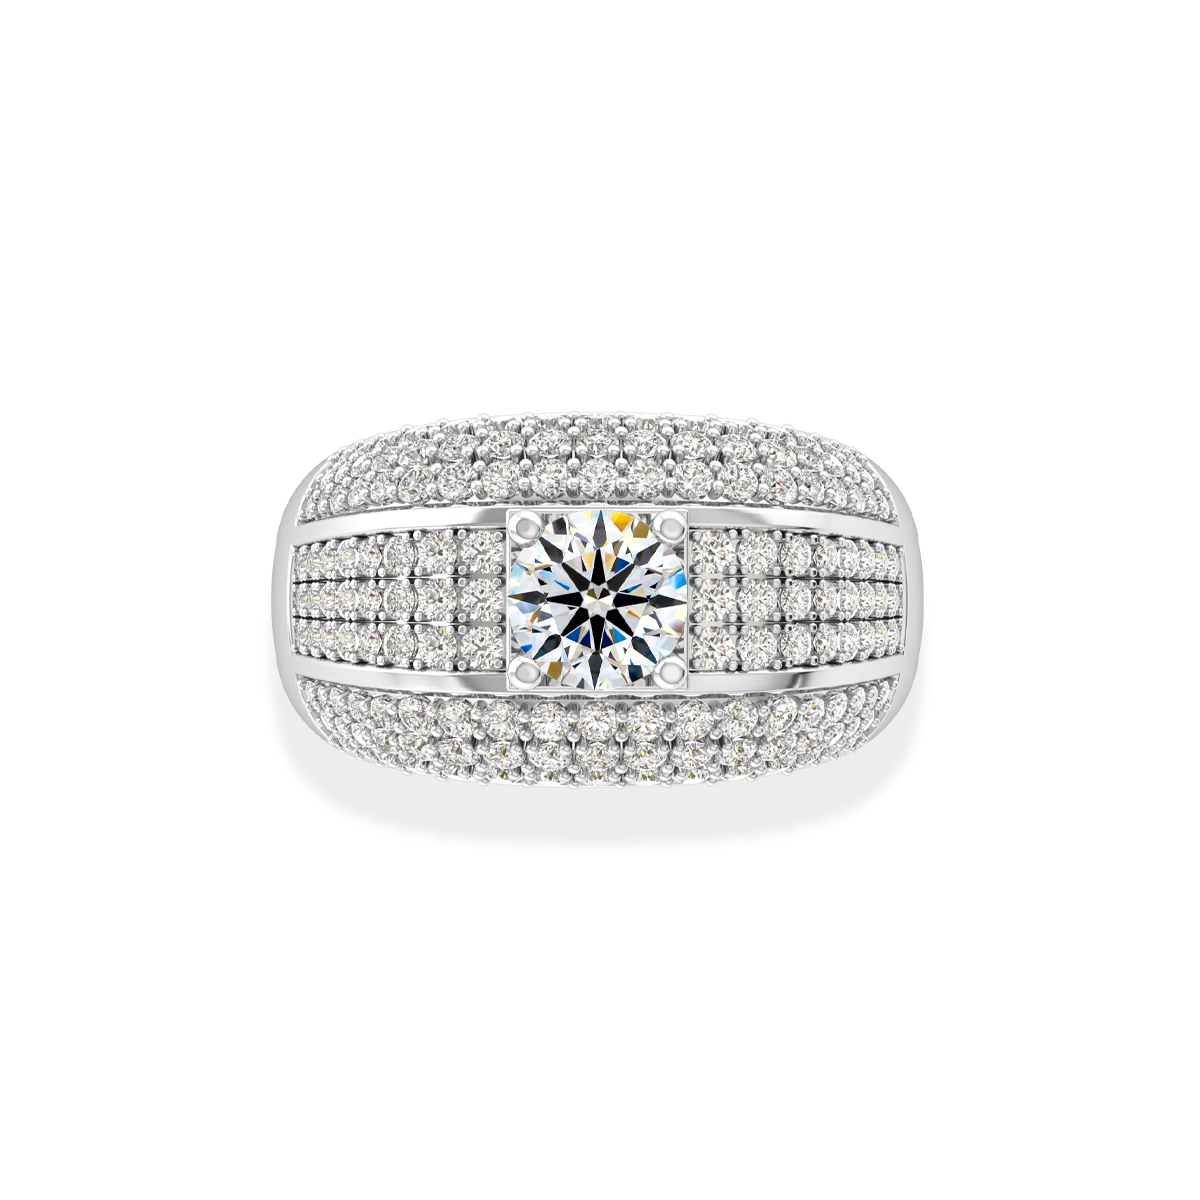 Quảng cáo - Cách chọn nhẫn kim cương nam đẹp để tặng người thân - Phong  cách lịch lãm và đẳng cấp | Quản lý chi phí xây dựng, Quản lý thi